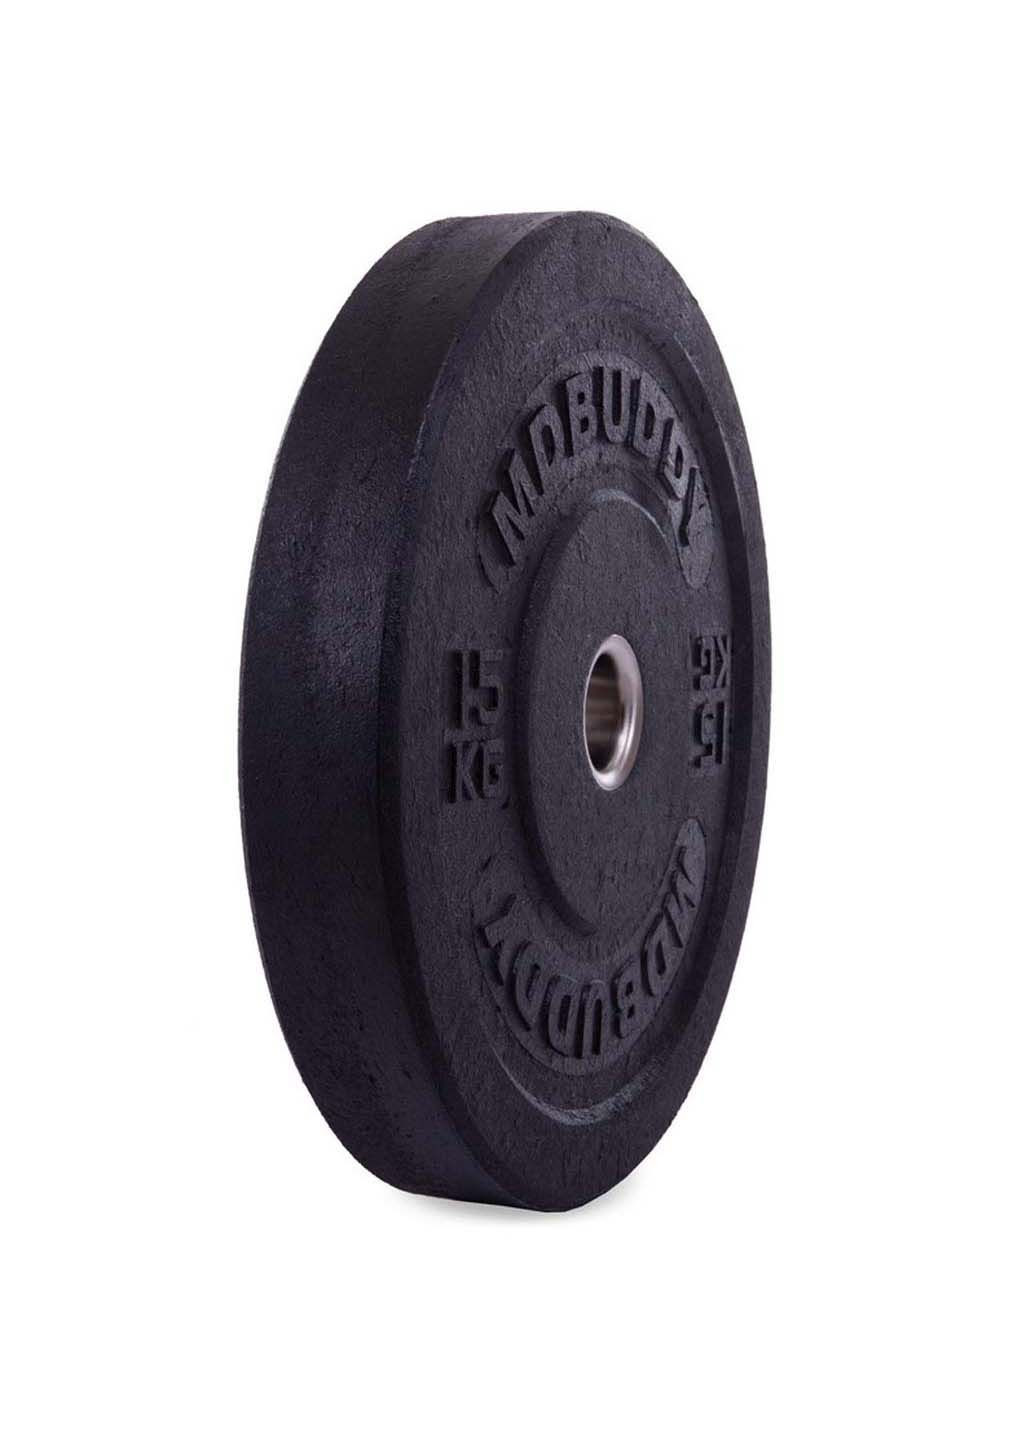 Млинці диски бамперні для кросфіту Bumper Plates TA-2676 15 кг MDbuddy (286043866)